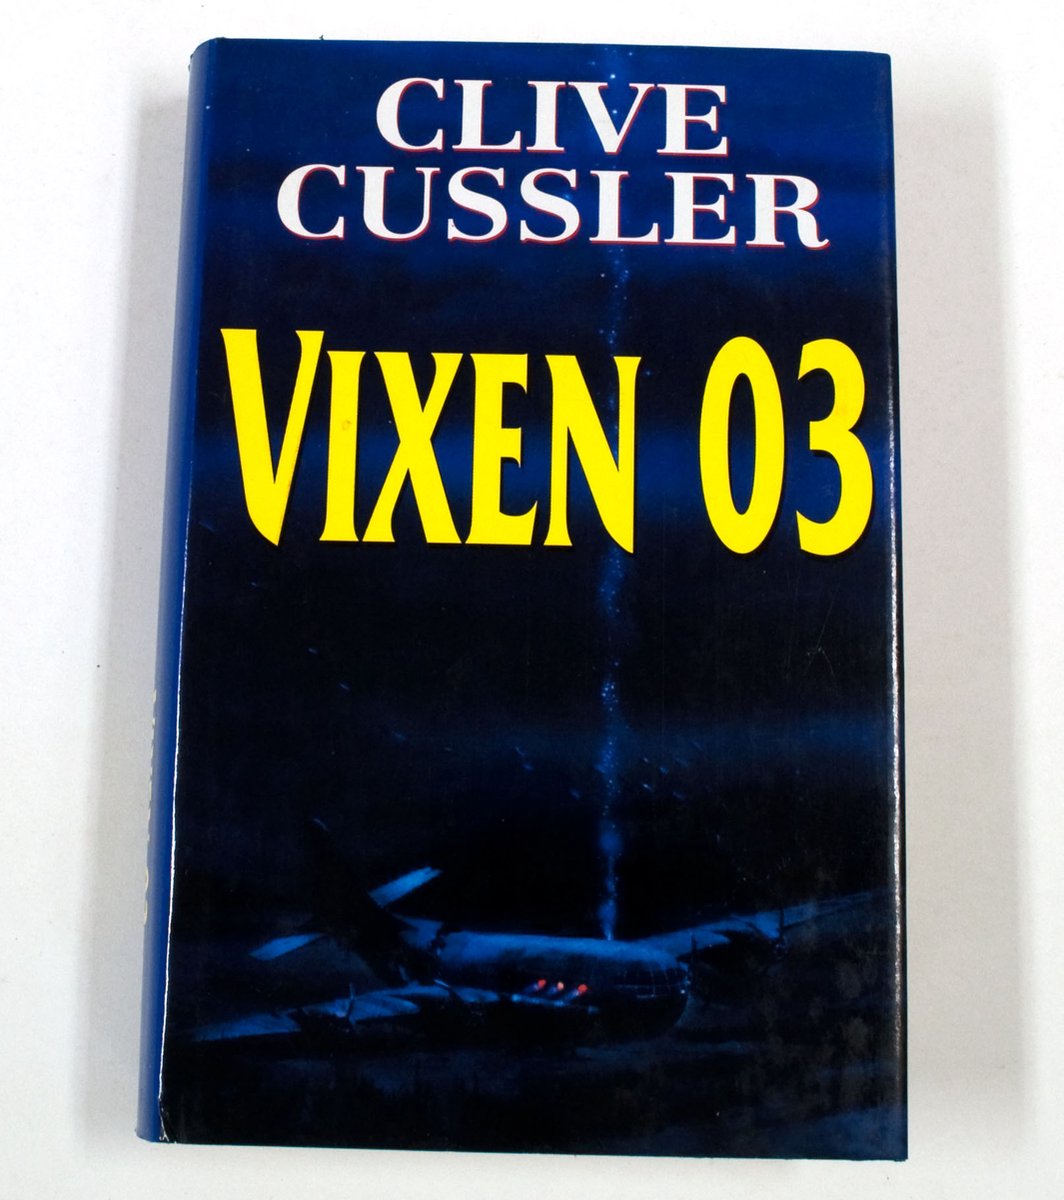 VIXEN 03 - Cussler Clive